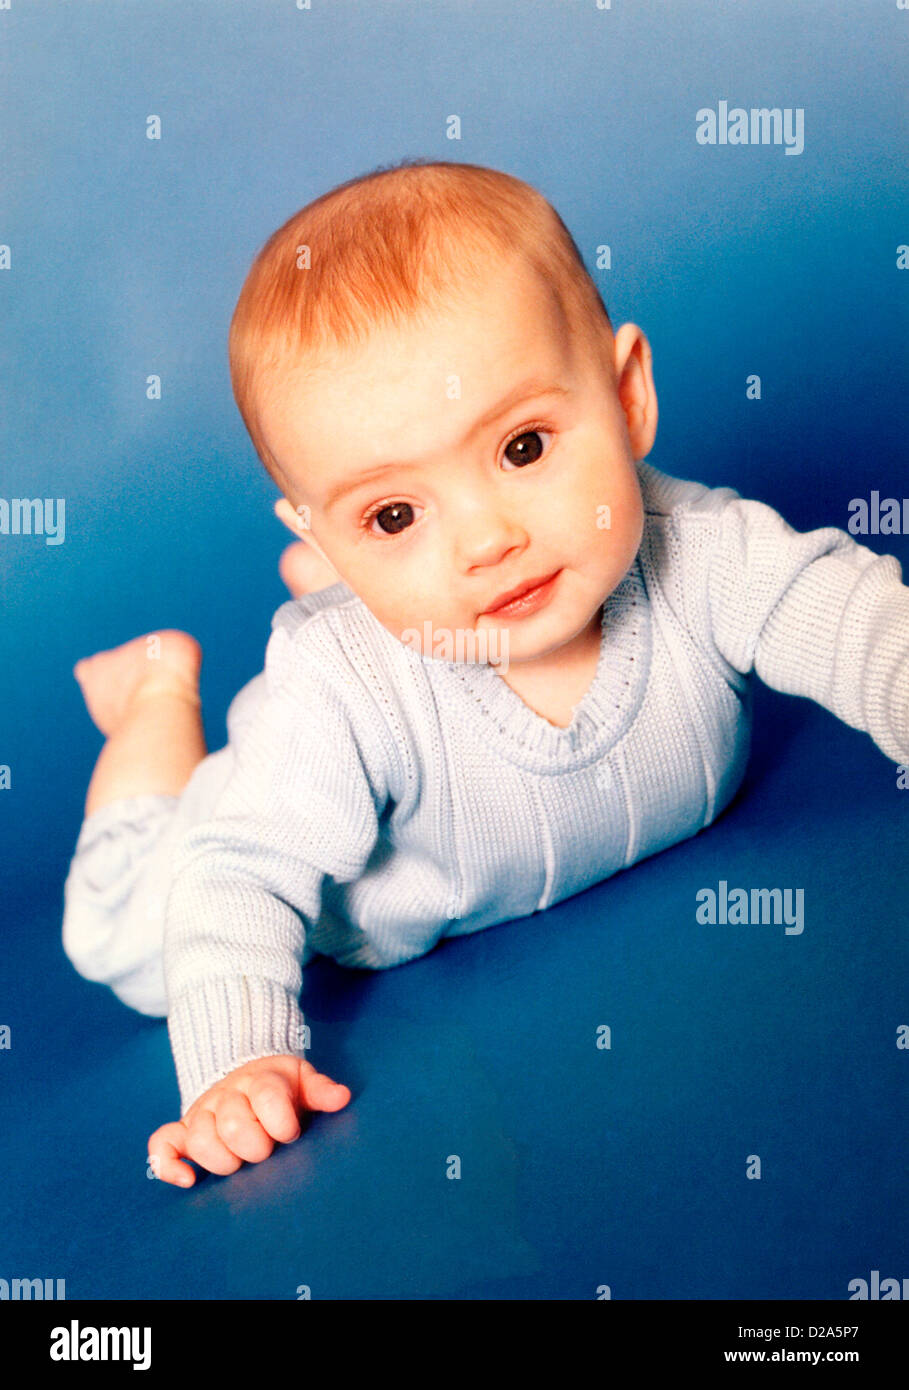 Portrait Of A Baby Boy Stock Photo Alamy